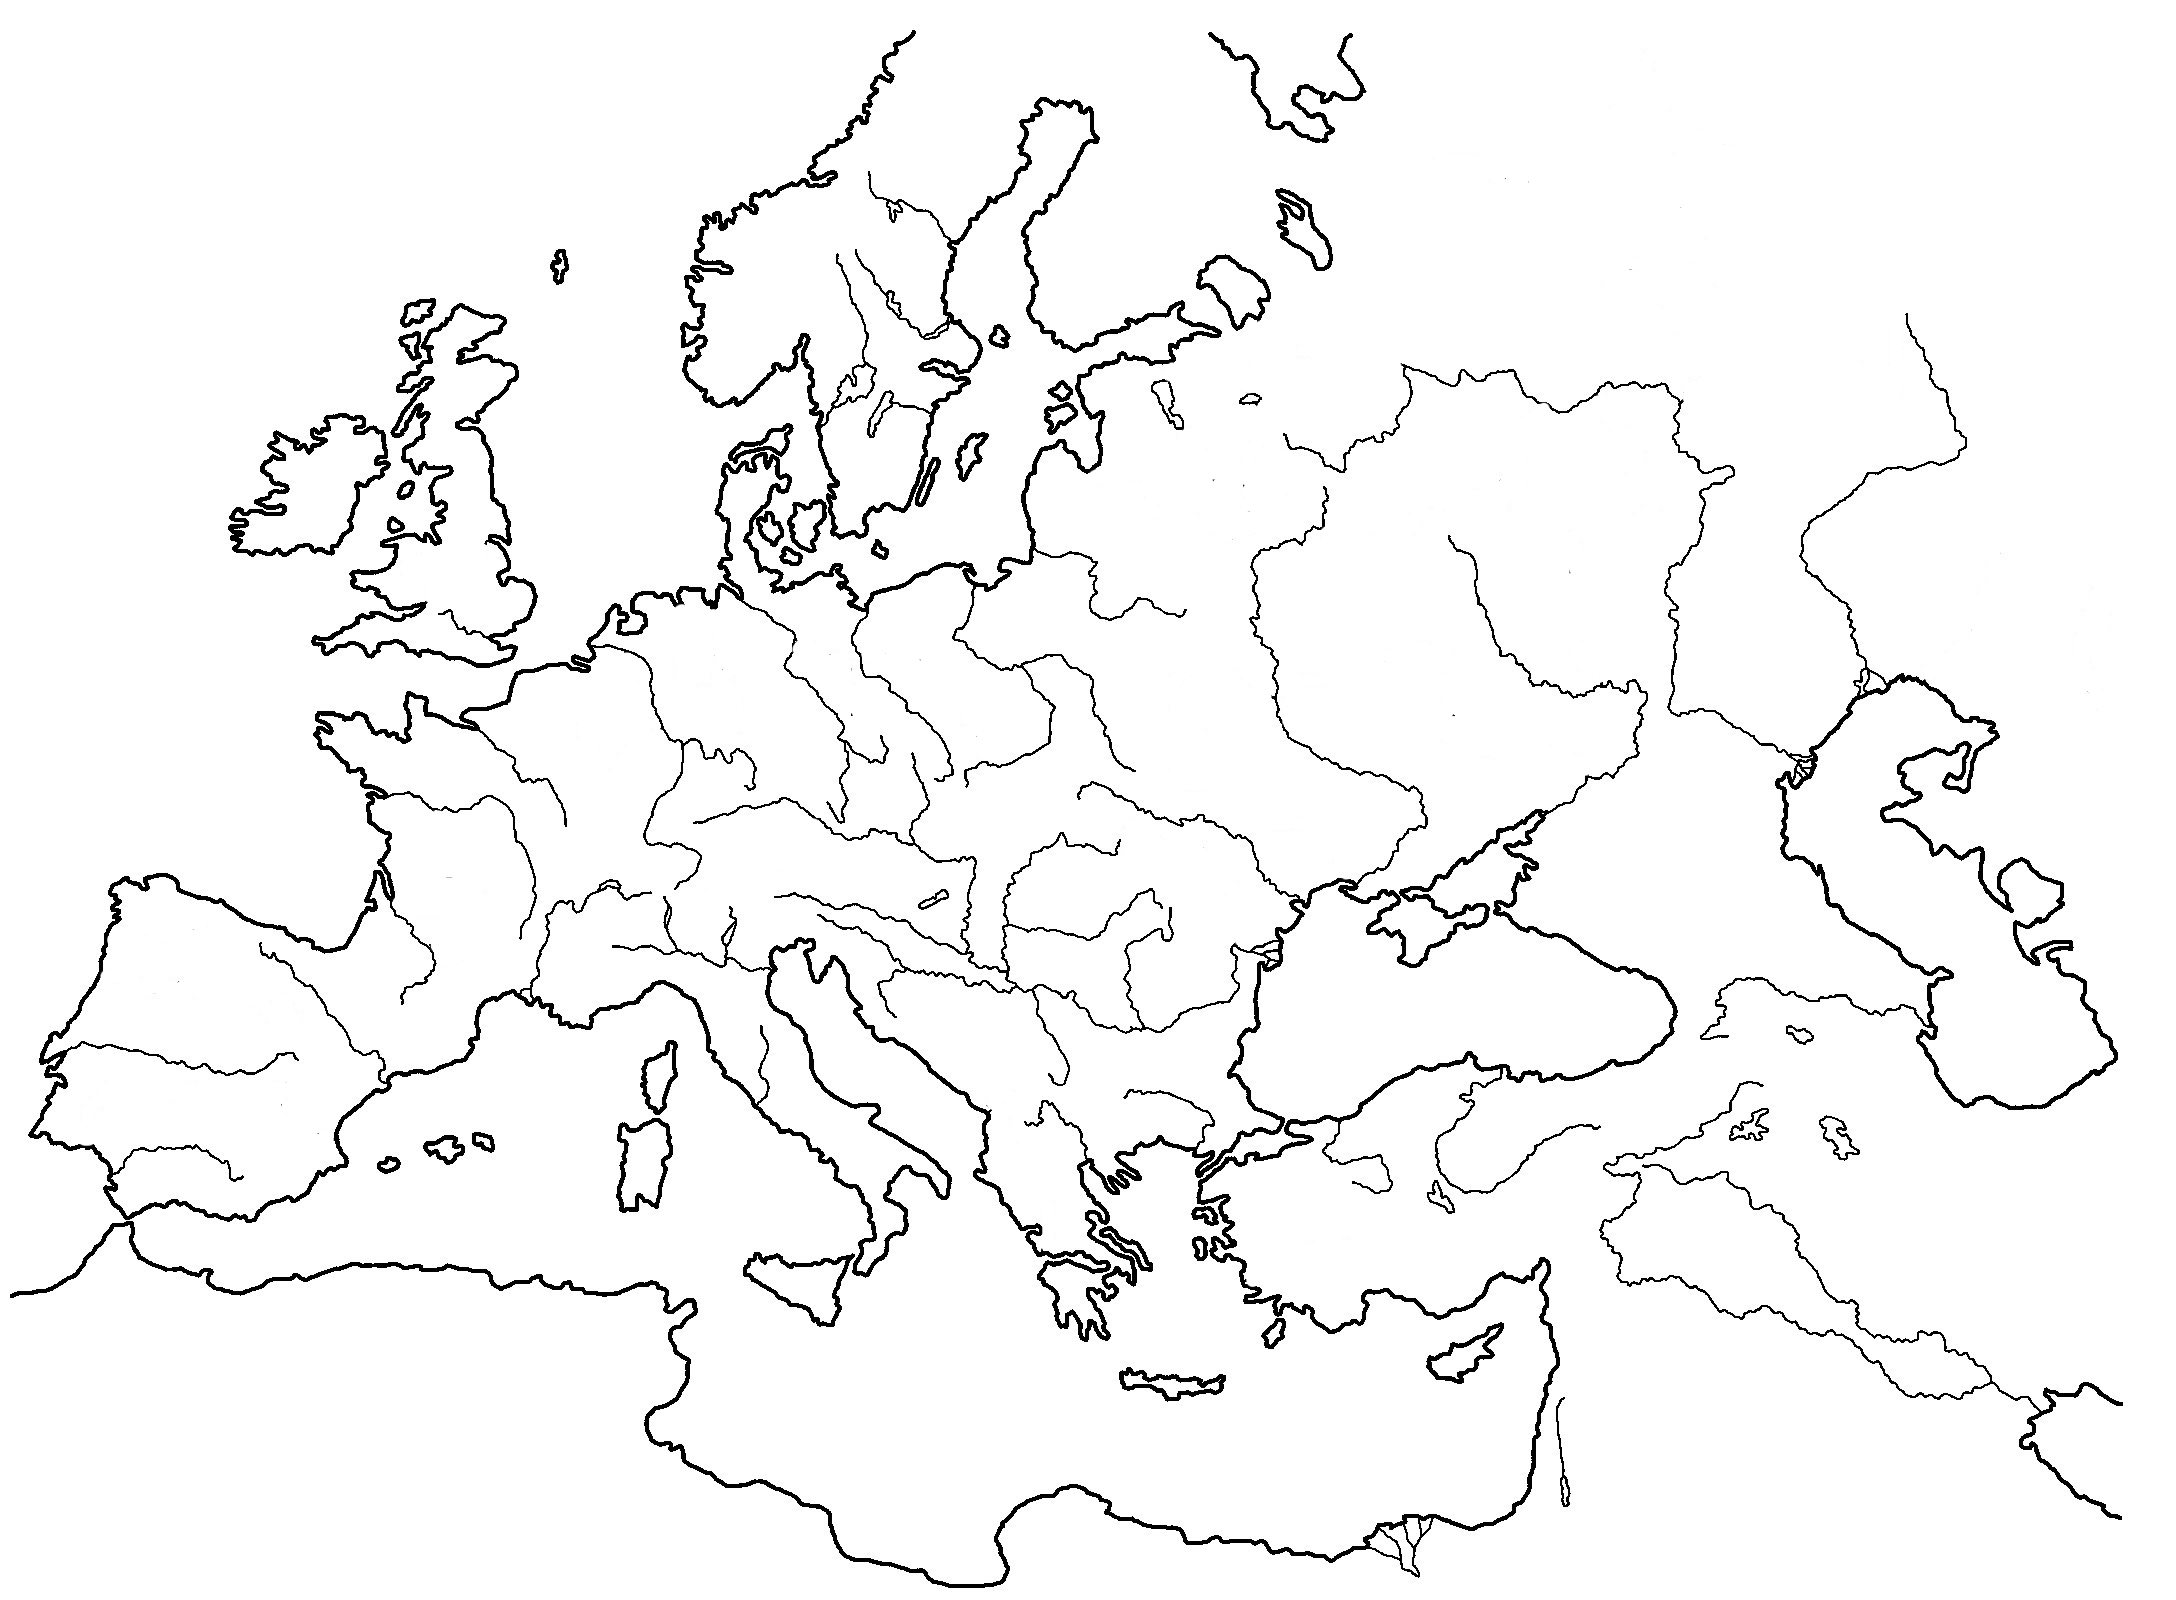 Европа 11 12 века. Карта Европы 10-12 века. Карта Европы 12 века. Карта средневековой Европы. Карта Европы 10 века.